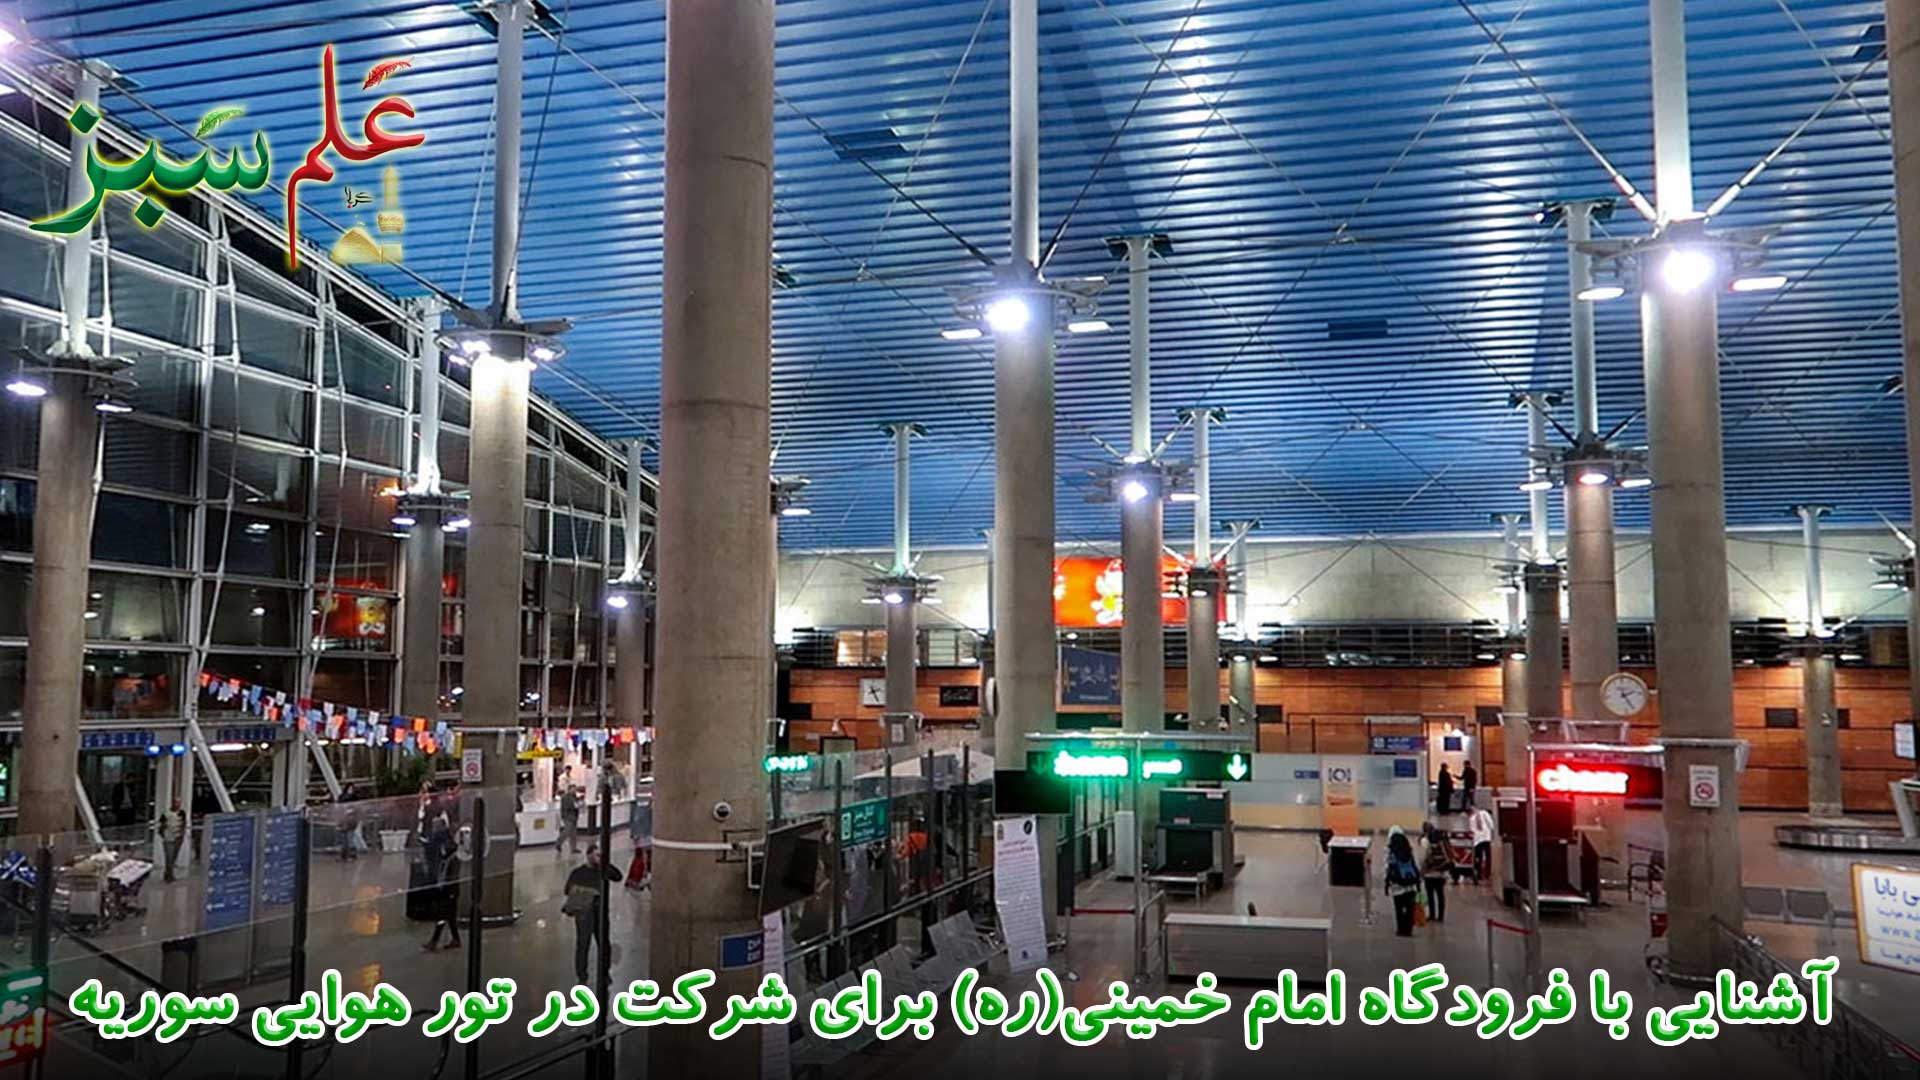 آشنایی با فرودگاه امام خمینی(ره) برای شرکت در تور هوایی سوریه